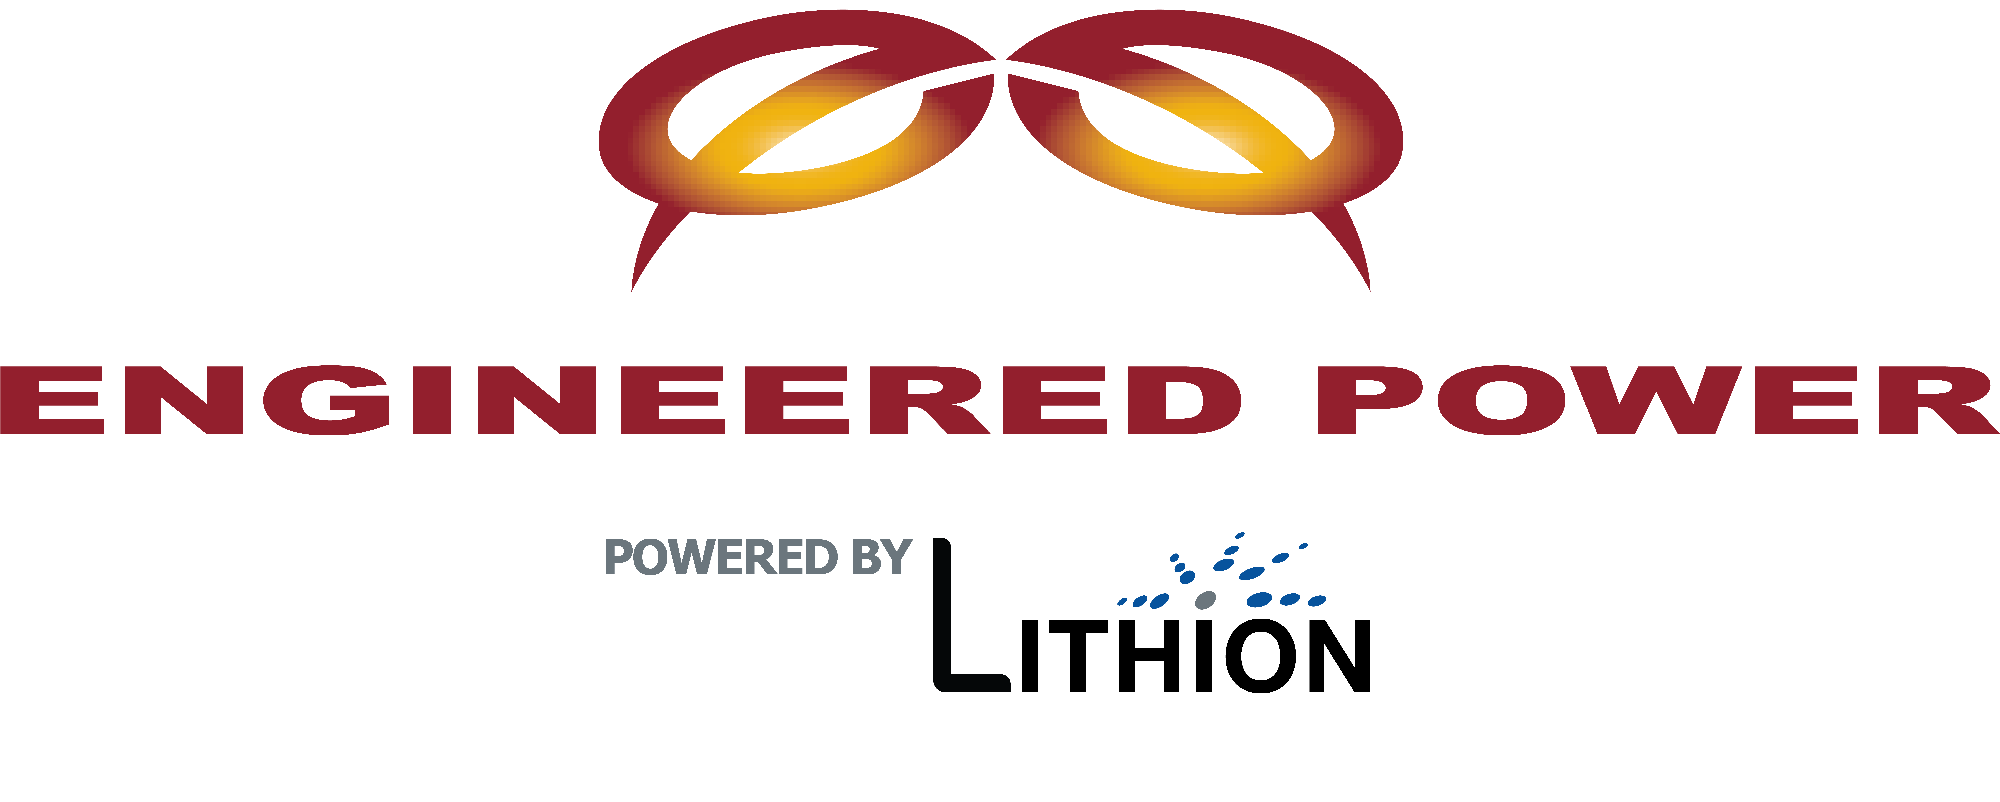 Engineered Power logo medium